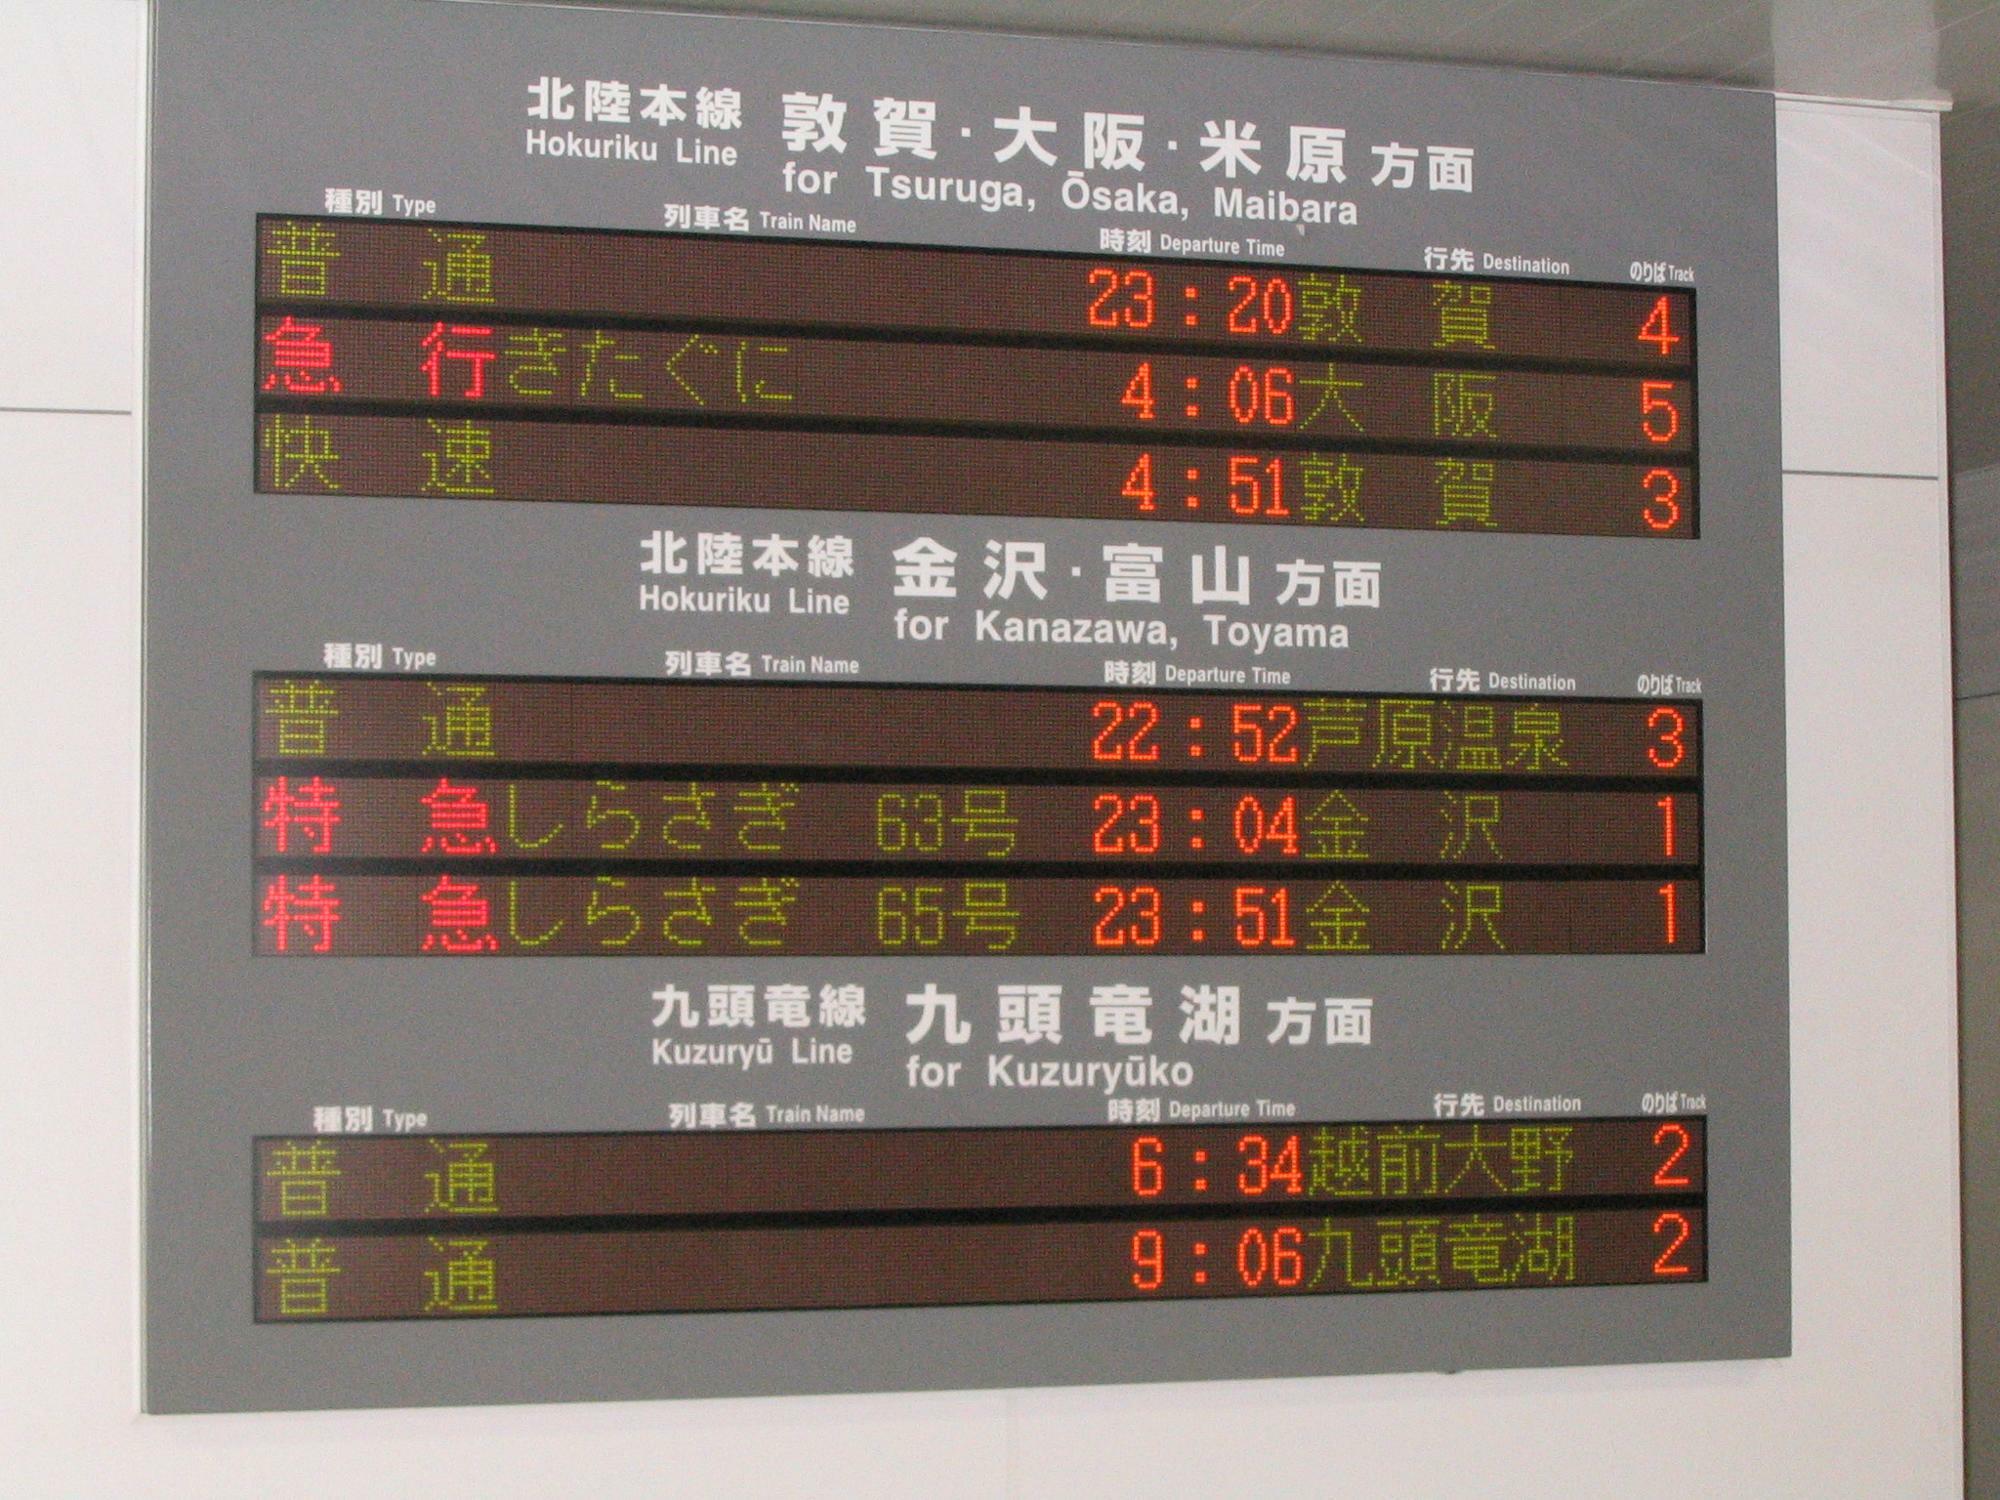 2010年当時の福井駅の電光掲示板。23時を過ぎても金沢行の特急列車の運行があり急行きたぐに号の表示も（筆者撮影）